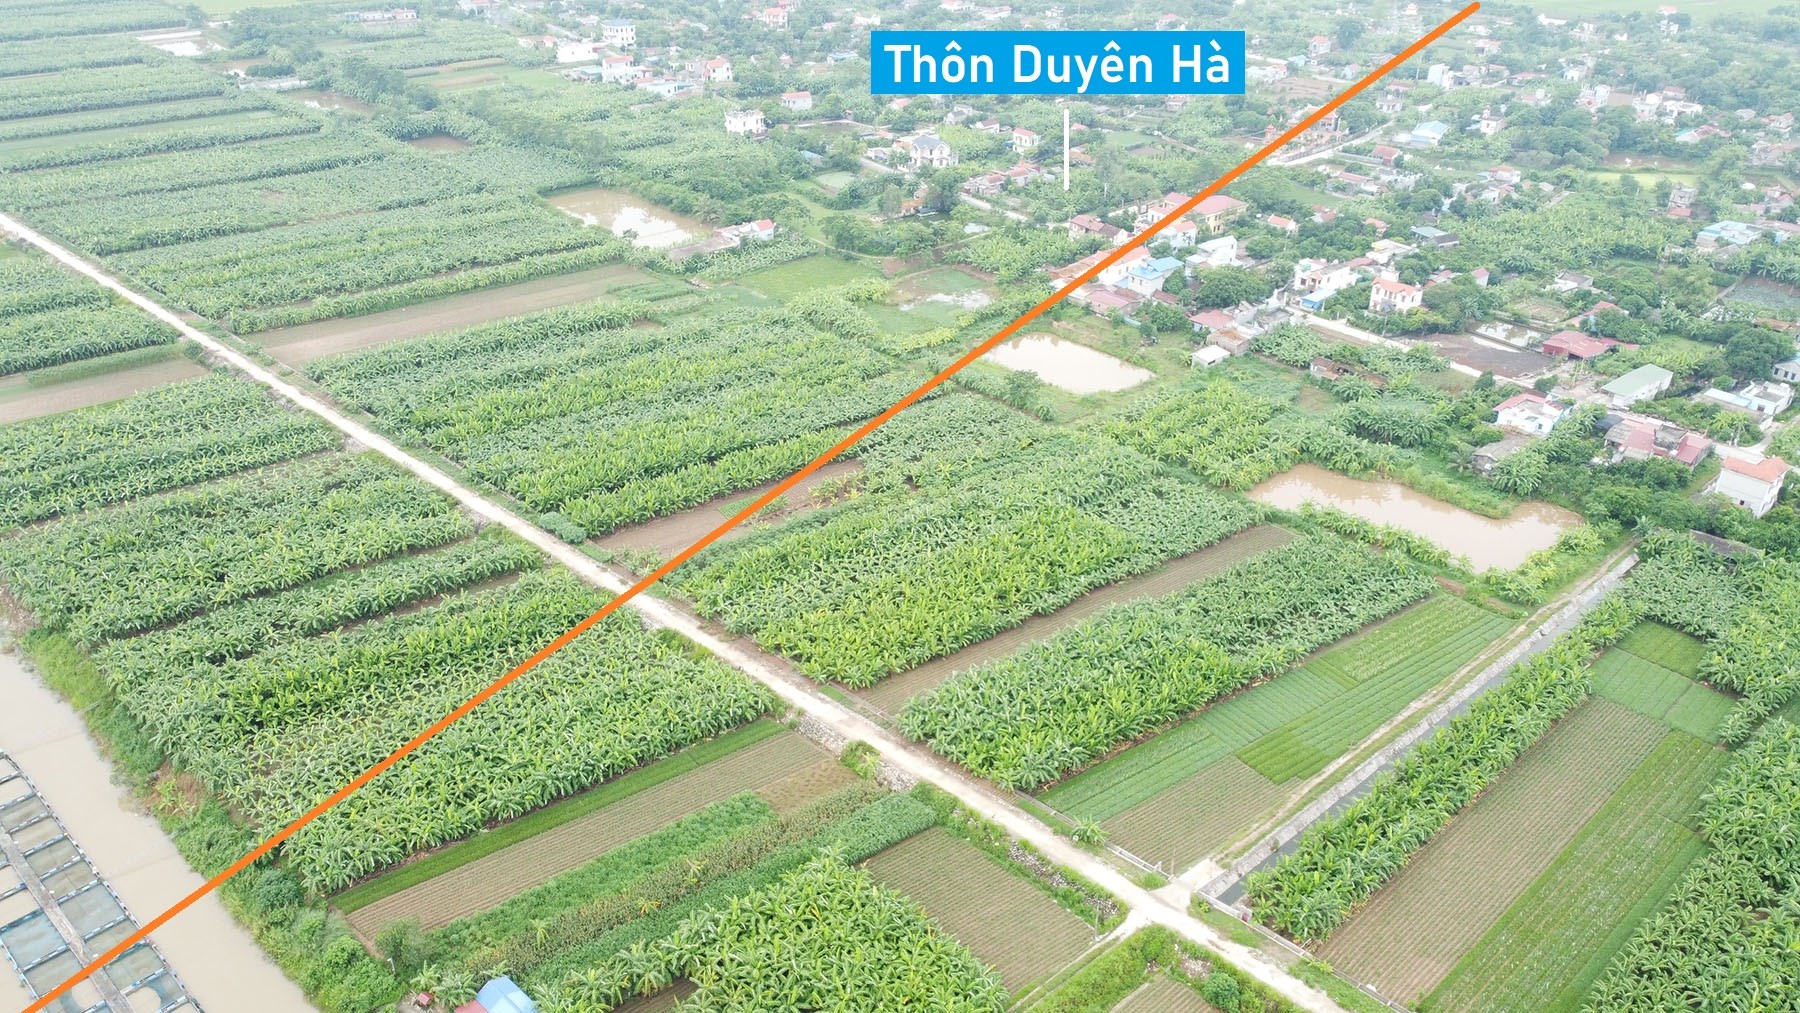 Toàn cảnh vị trí quy hoạch xây cầu vượt sông Hồng nối Lý Nhân, Hà Nam với Hưng Hà, Thái Bình